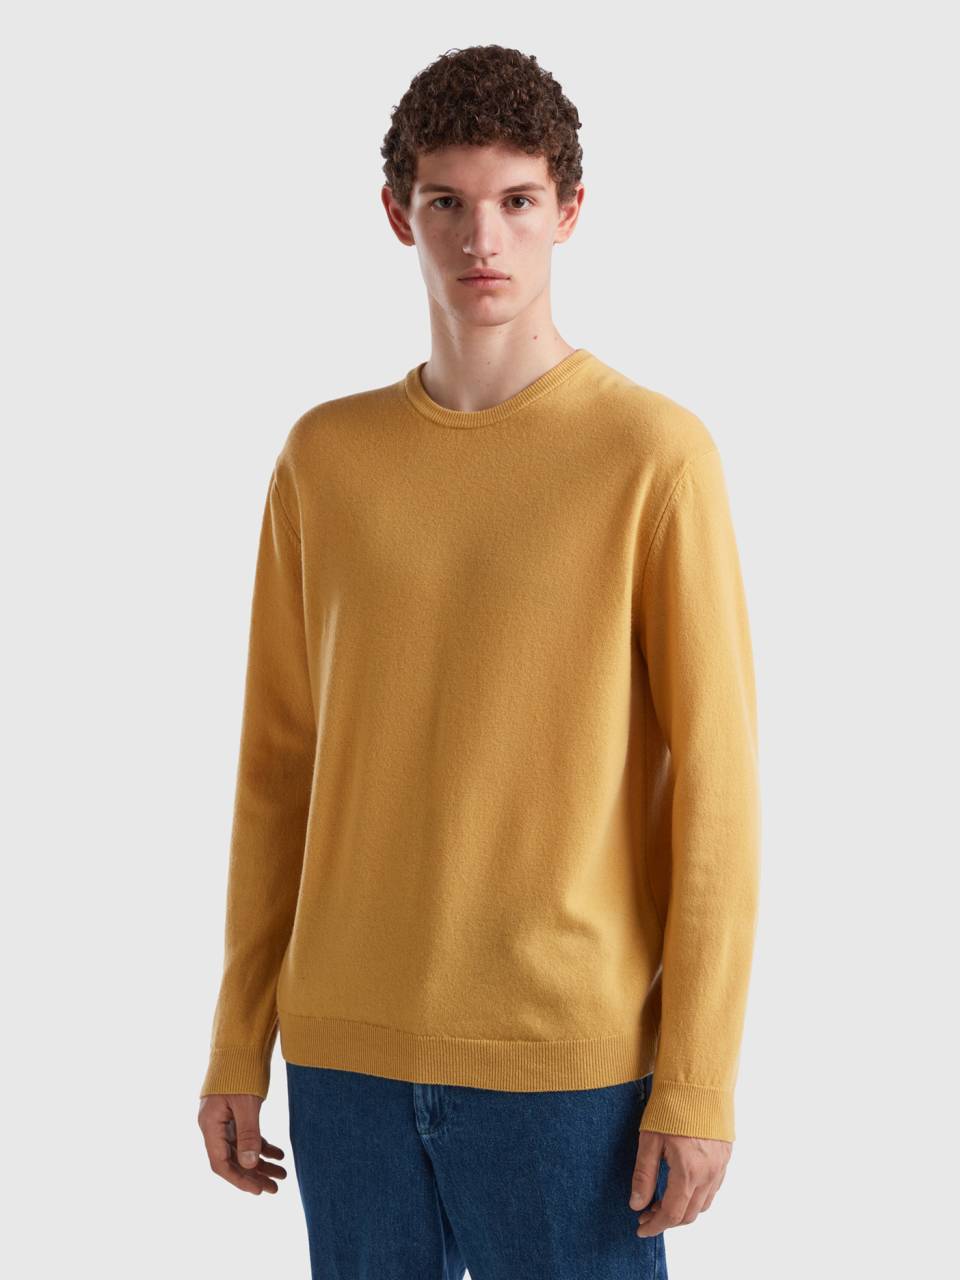 Benetton ocher yellow crew neck sweater in pure merino wool. 1